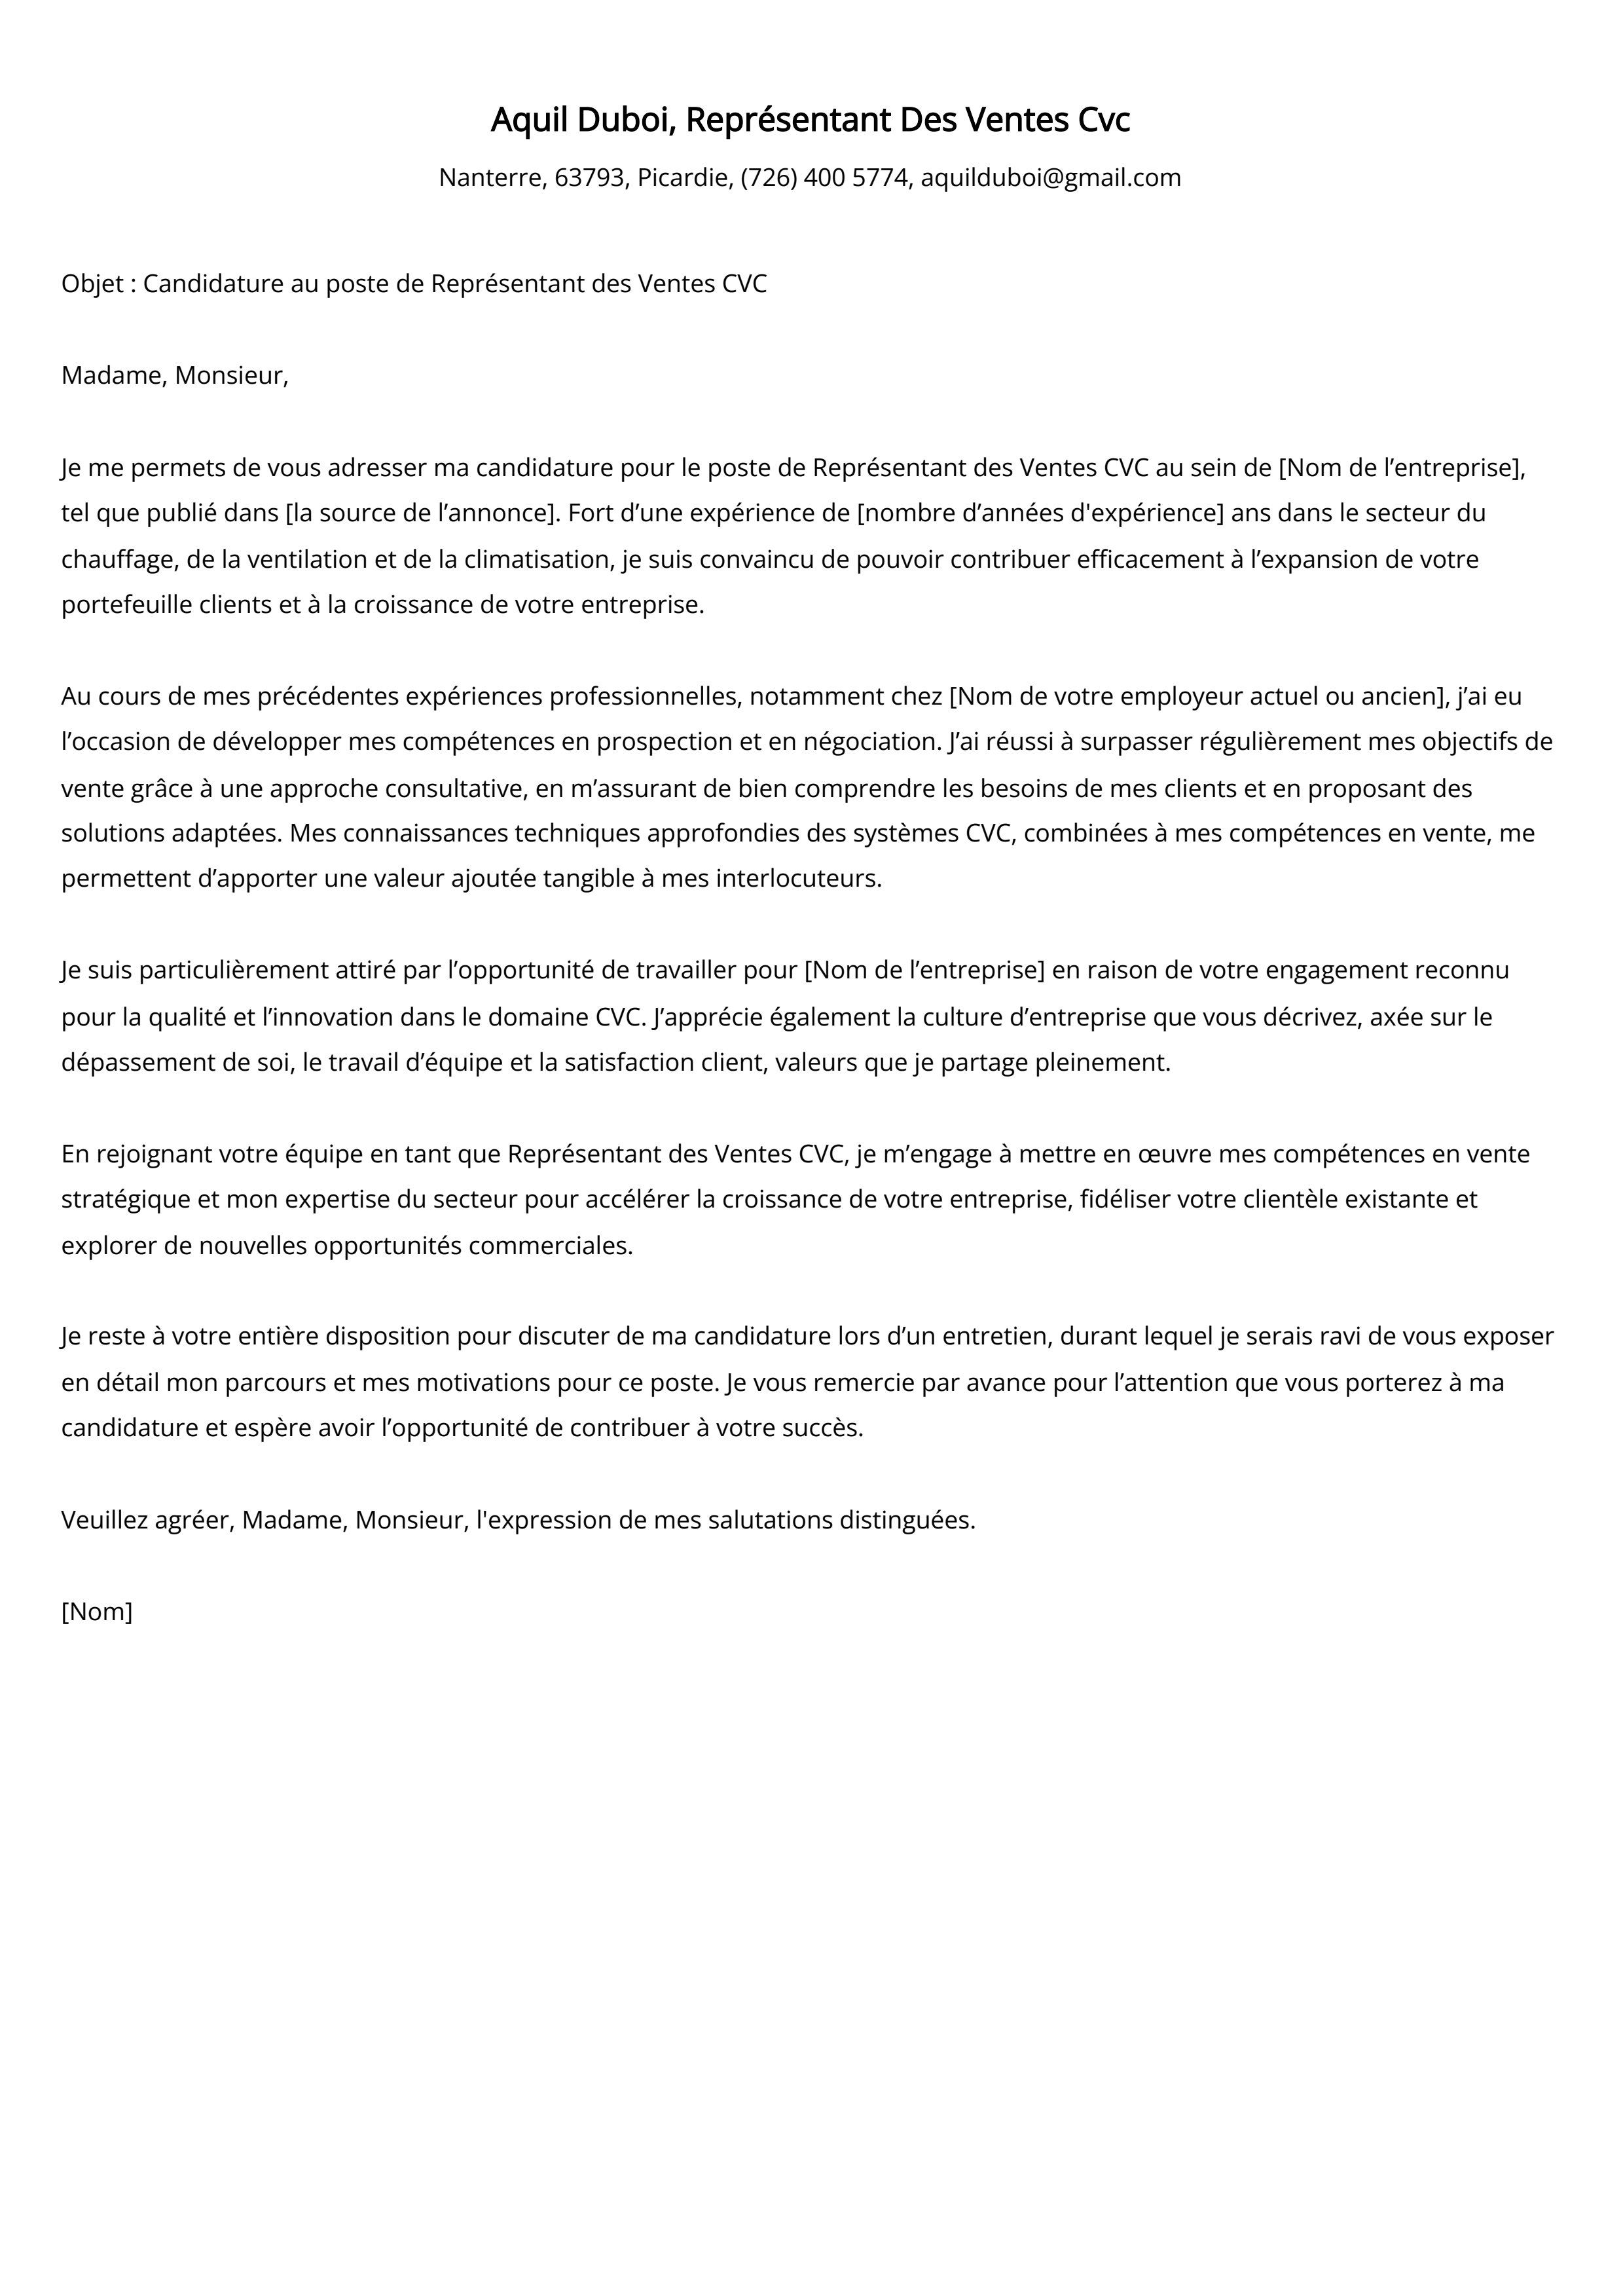 Représentant Des Ventes Cvc Cover Letter Example